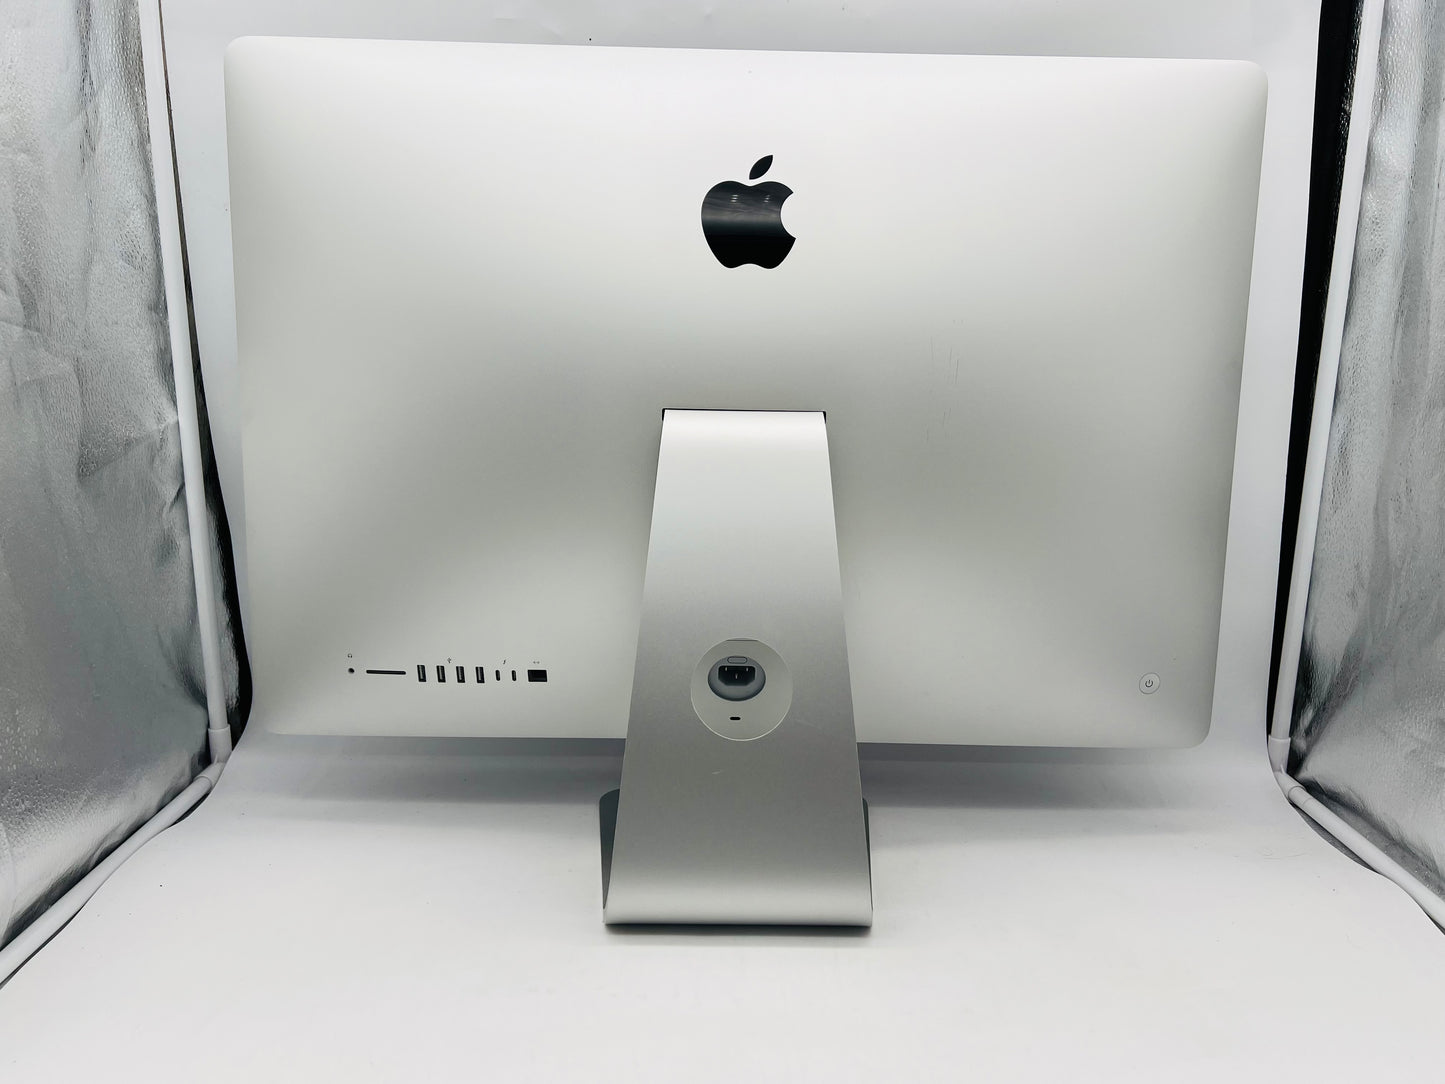 Apple 2020 iMac 27" 5K 3.6GHz i9 64GB RAM 1TB SSD RP5700XT 16GB - Very good